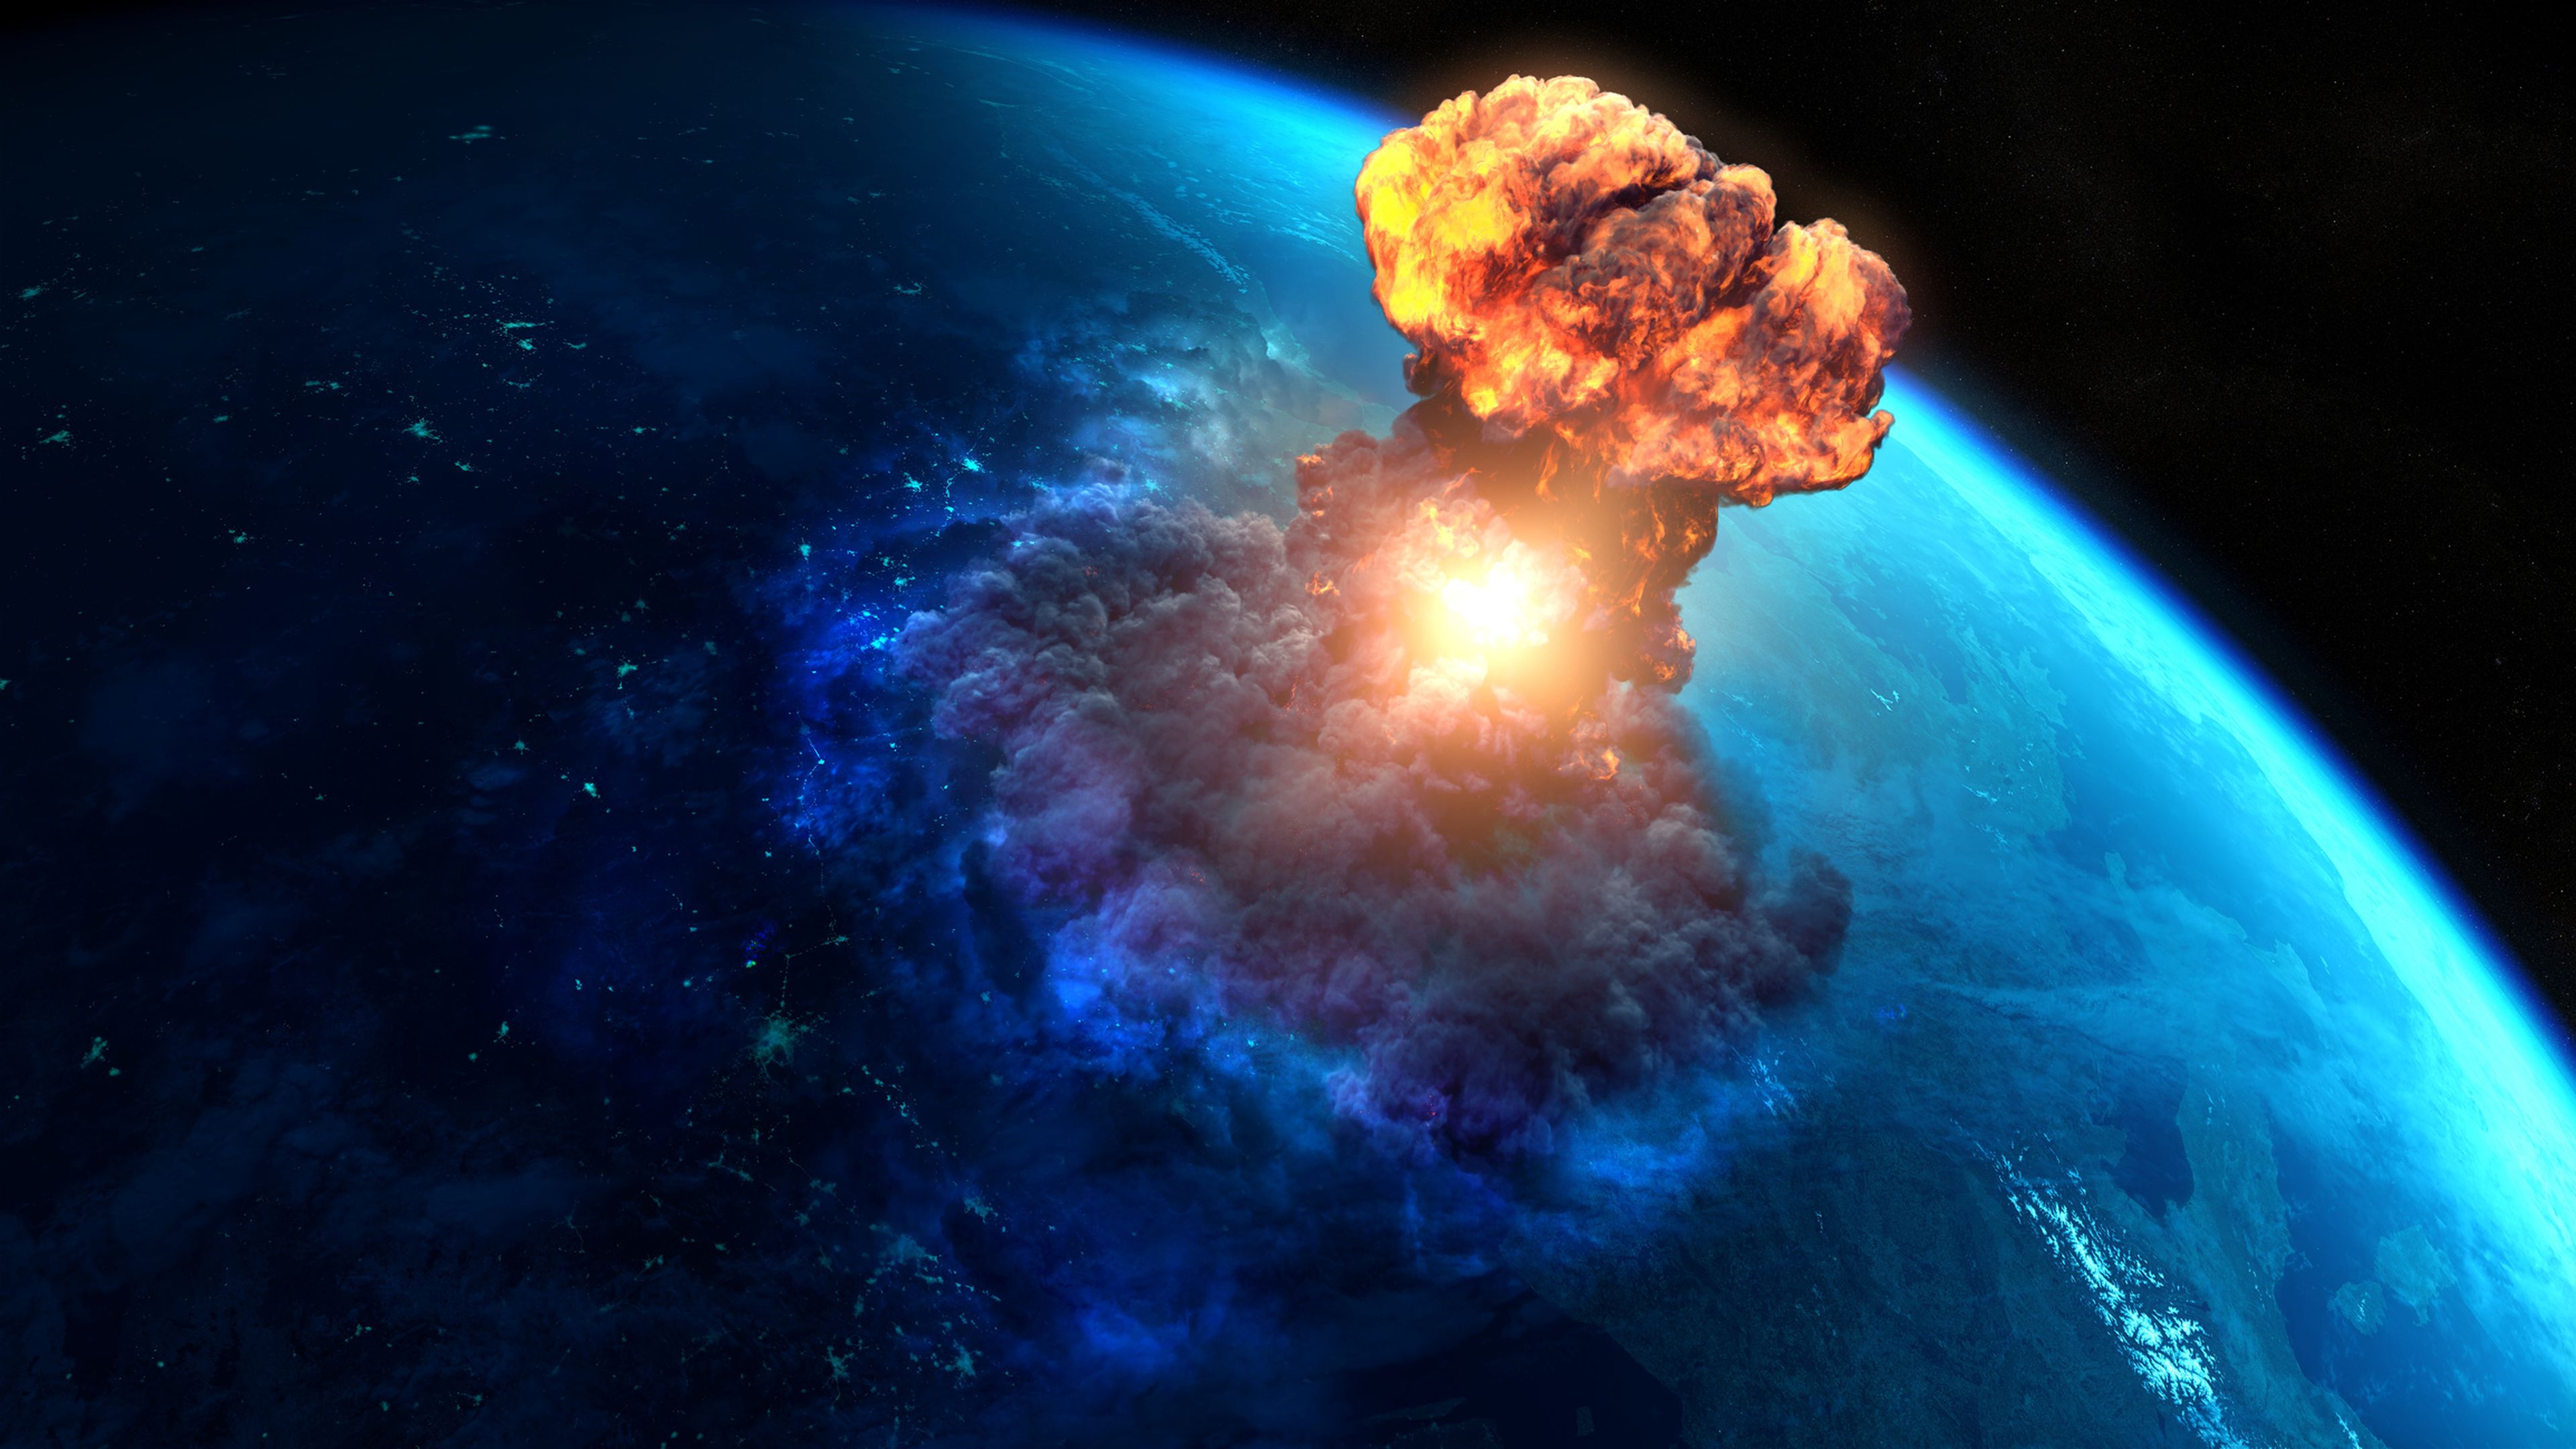 Asteroide impactando contra la Tierra.